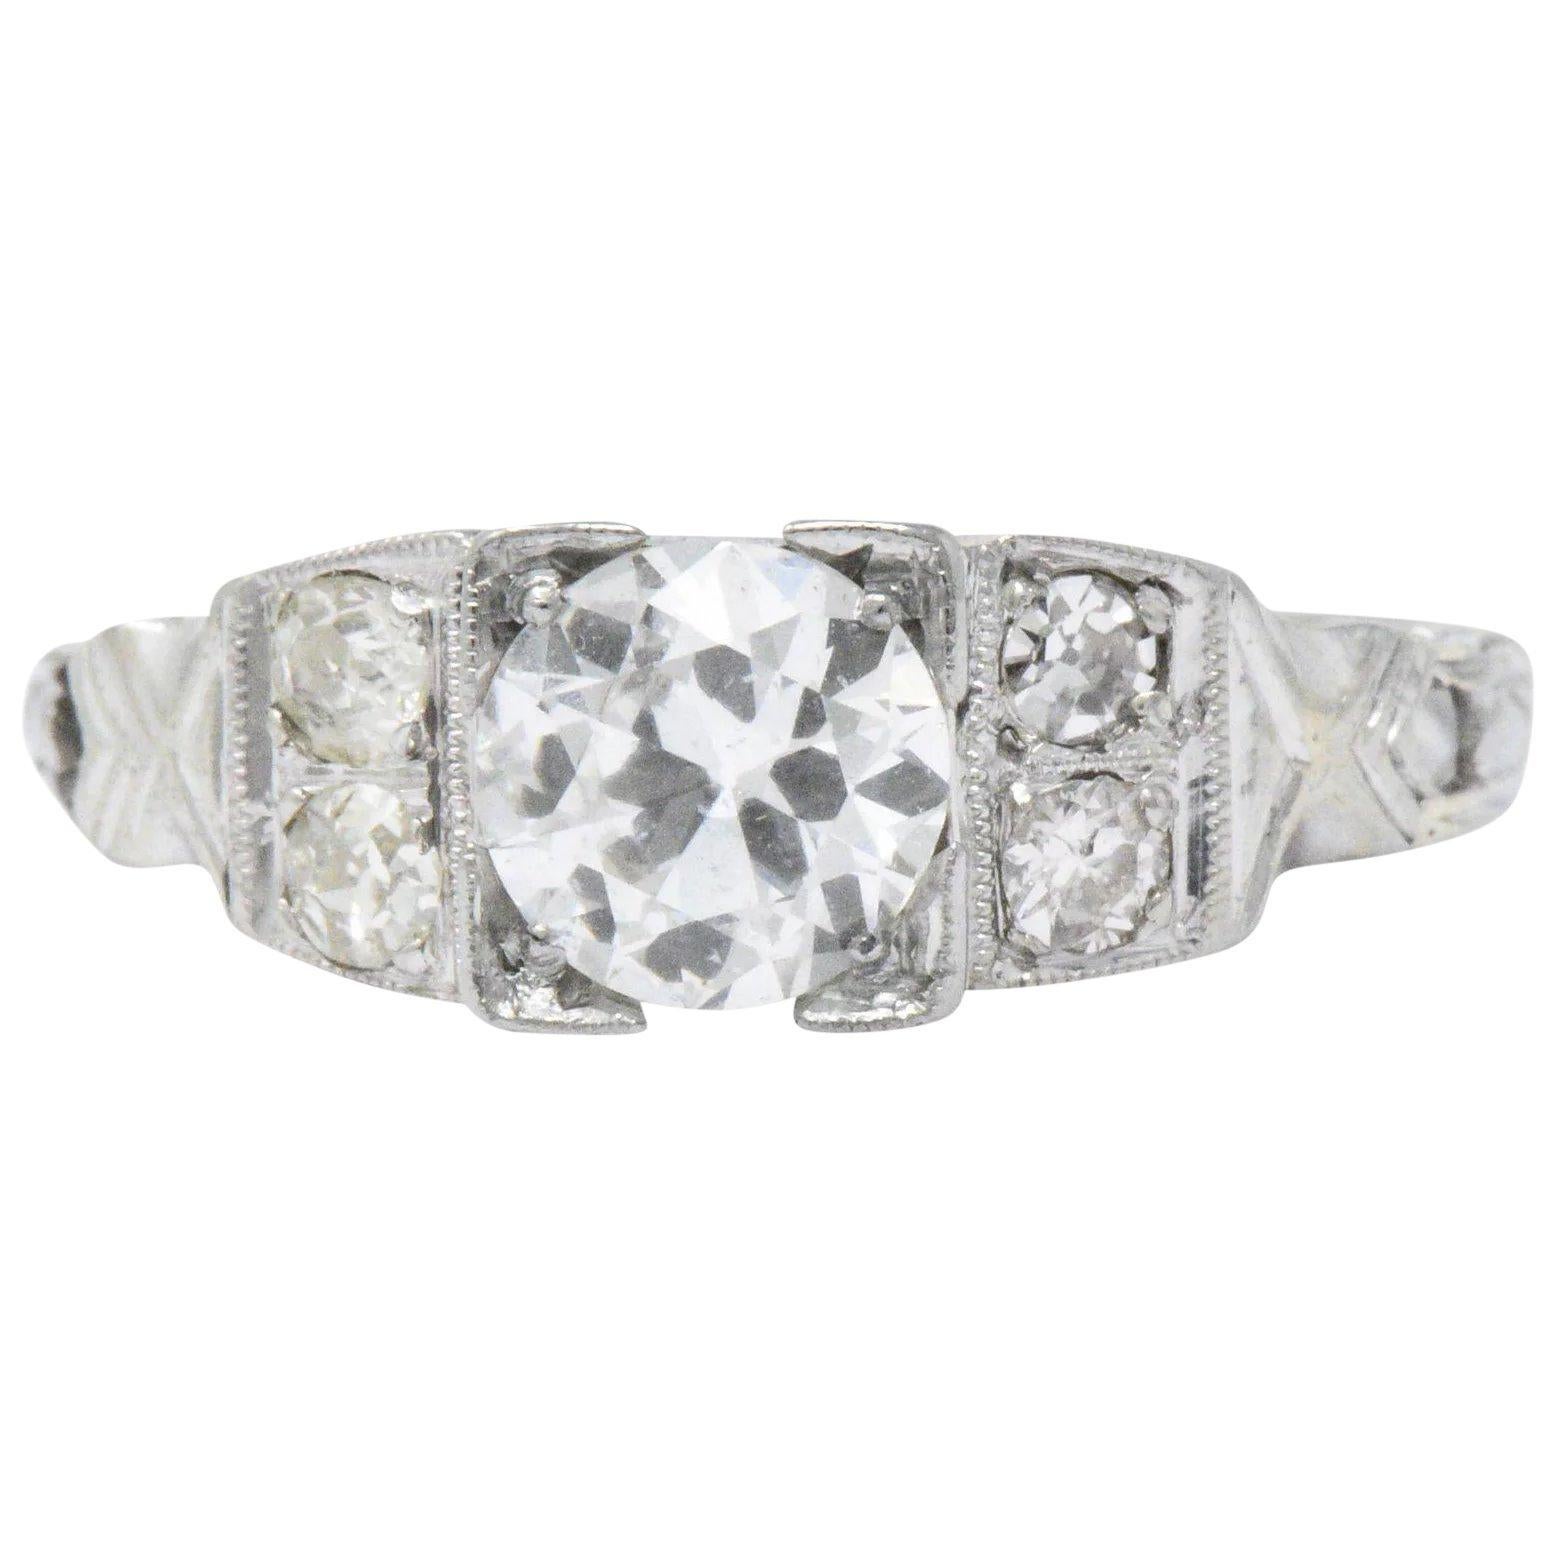 Vintage 0.94 Carat Diamond & 18 Karat White Gold Engagement Ring GIA